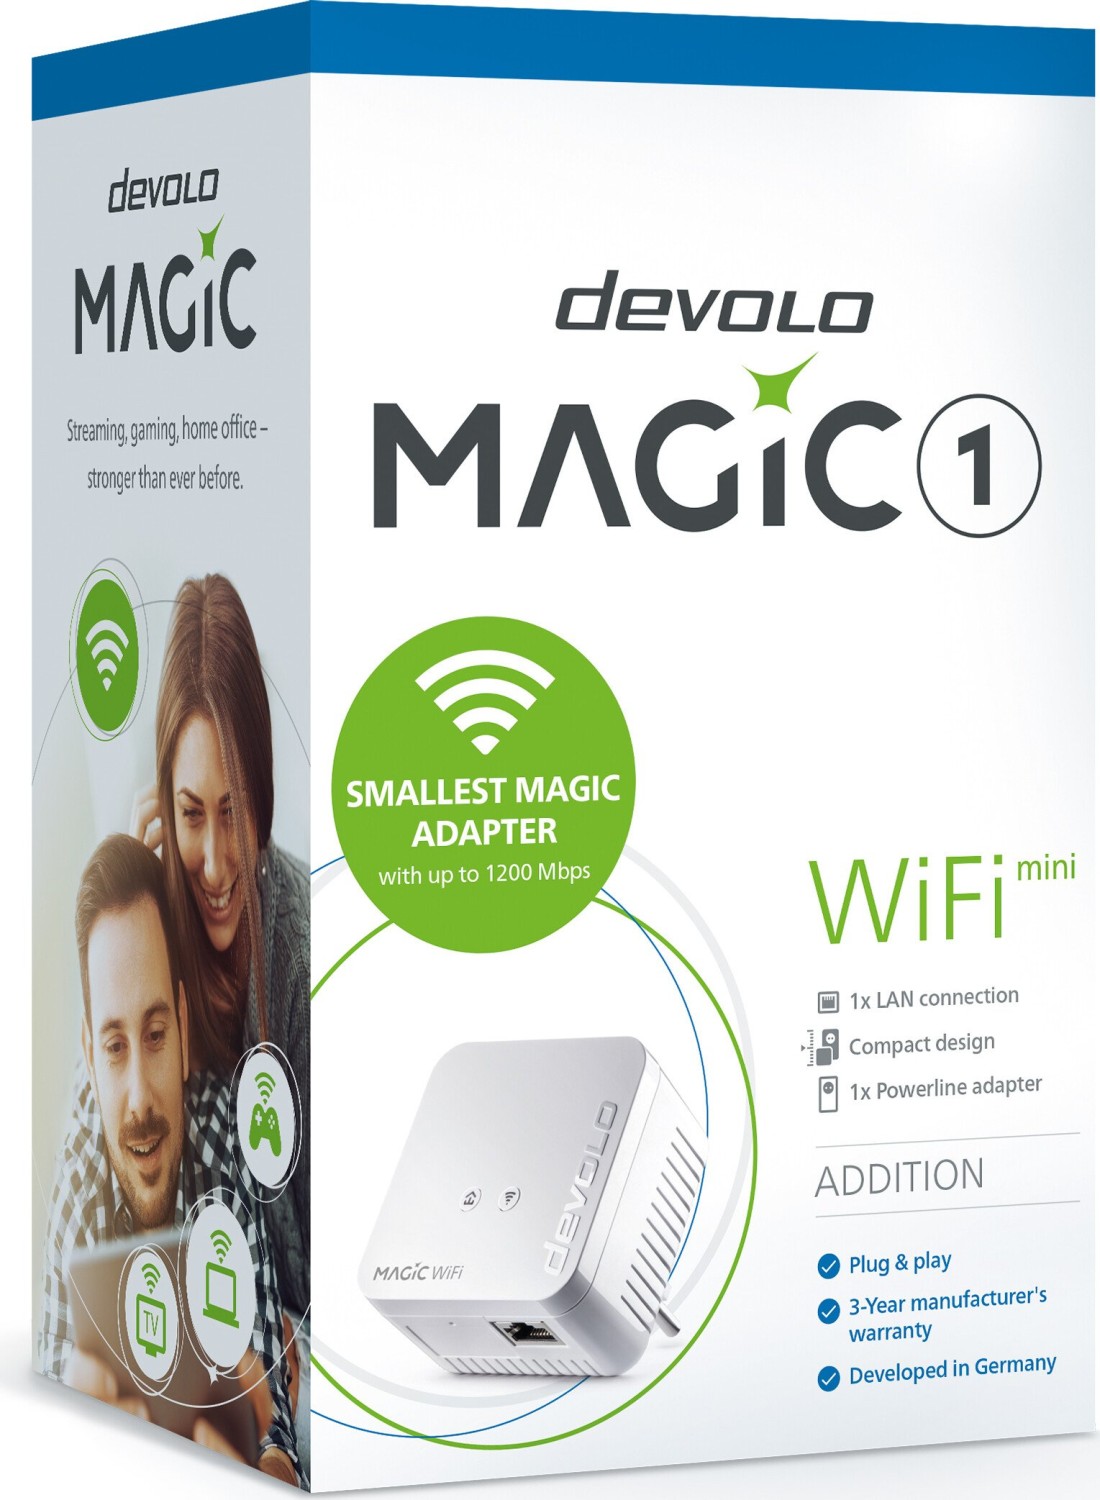 DEVOLO Magic 1 Wifi mini MD 88143